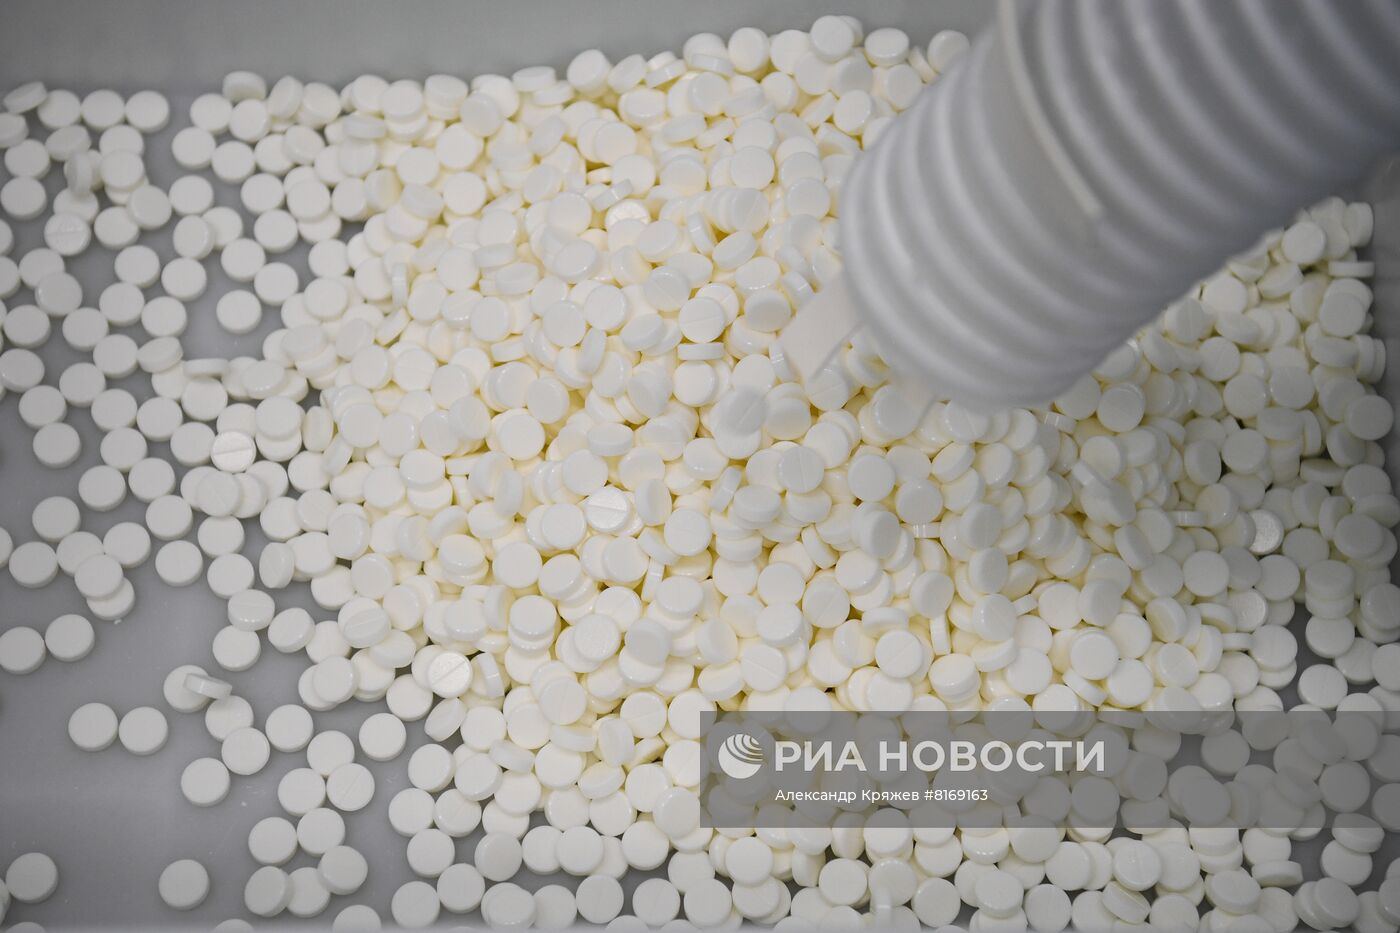 Фармацевтическая компания Renewal в Новосибирске